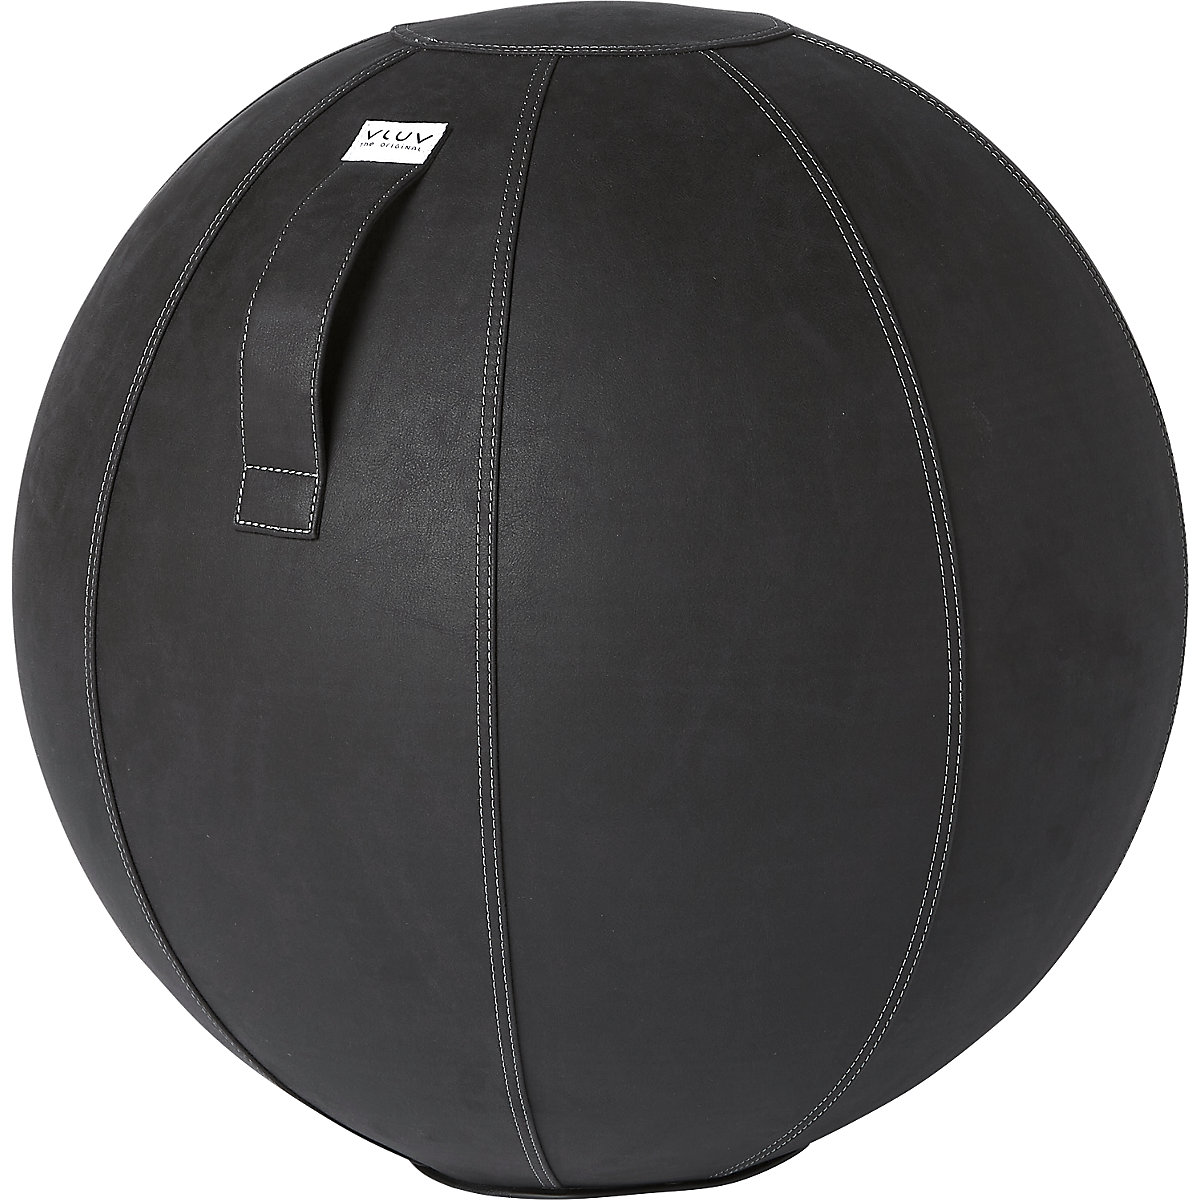 Fitball VEGA – VLUV, similpelle vegana, 600 – 650 mm, nero-7